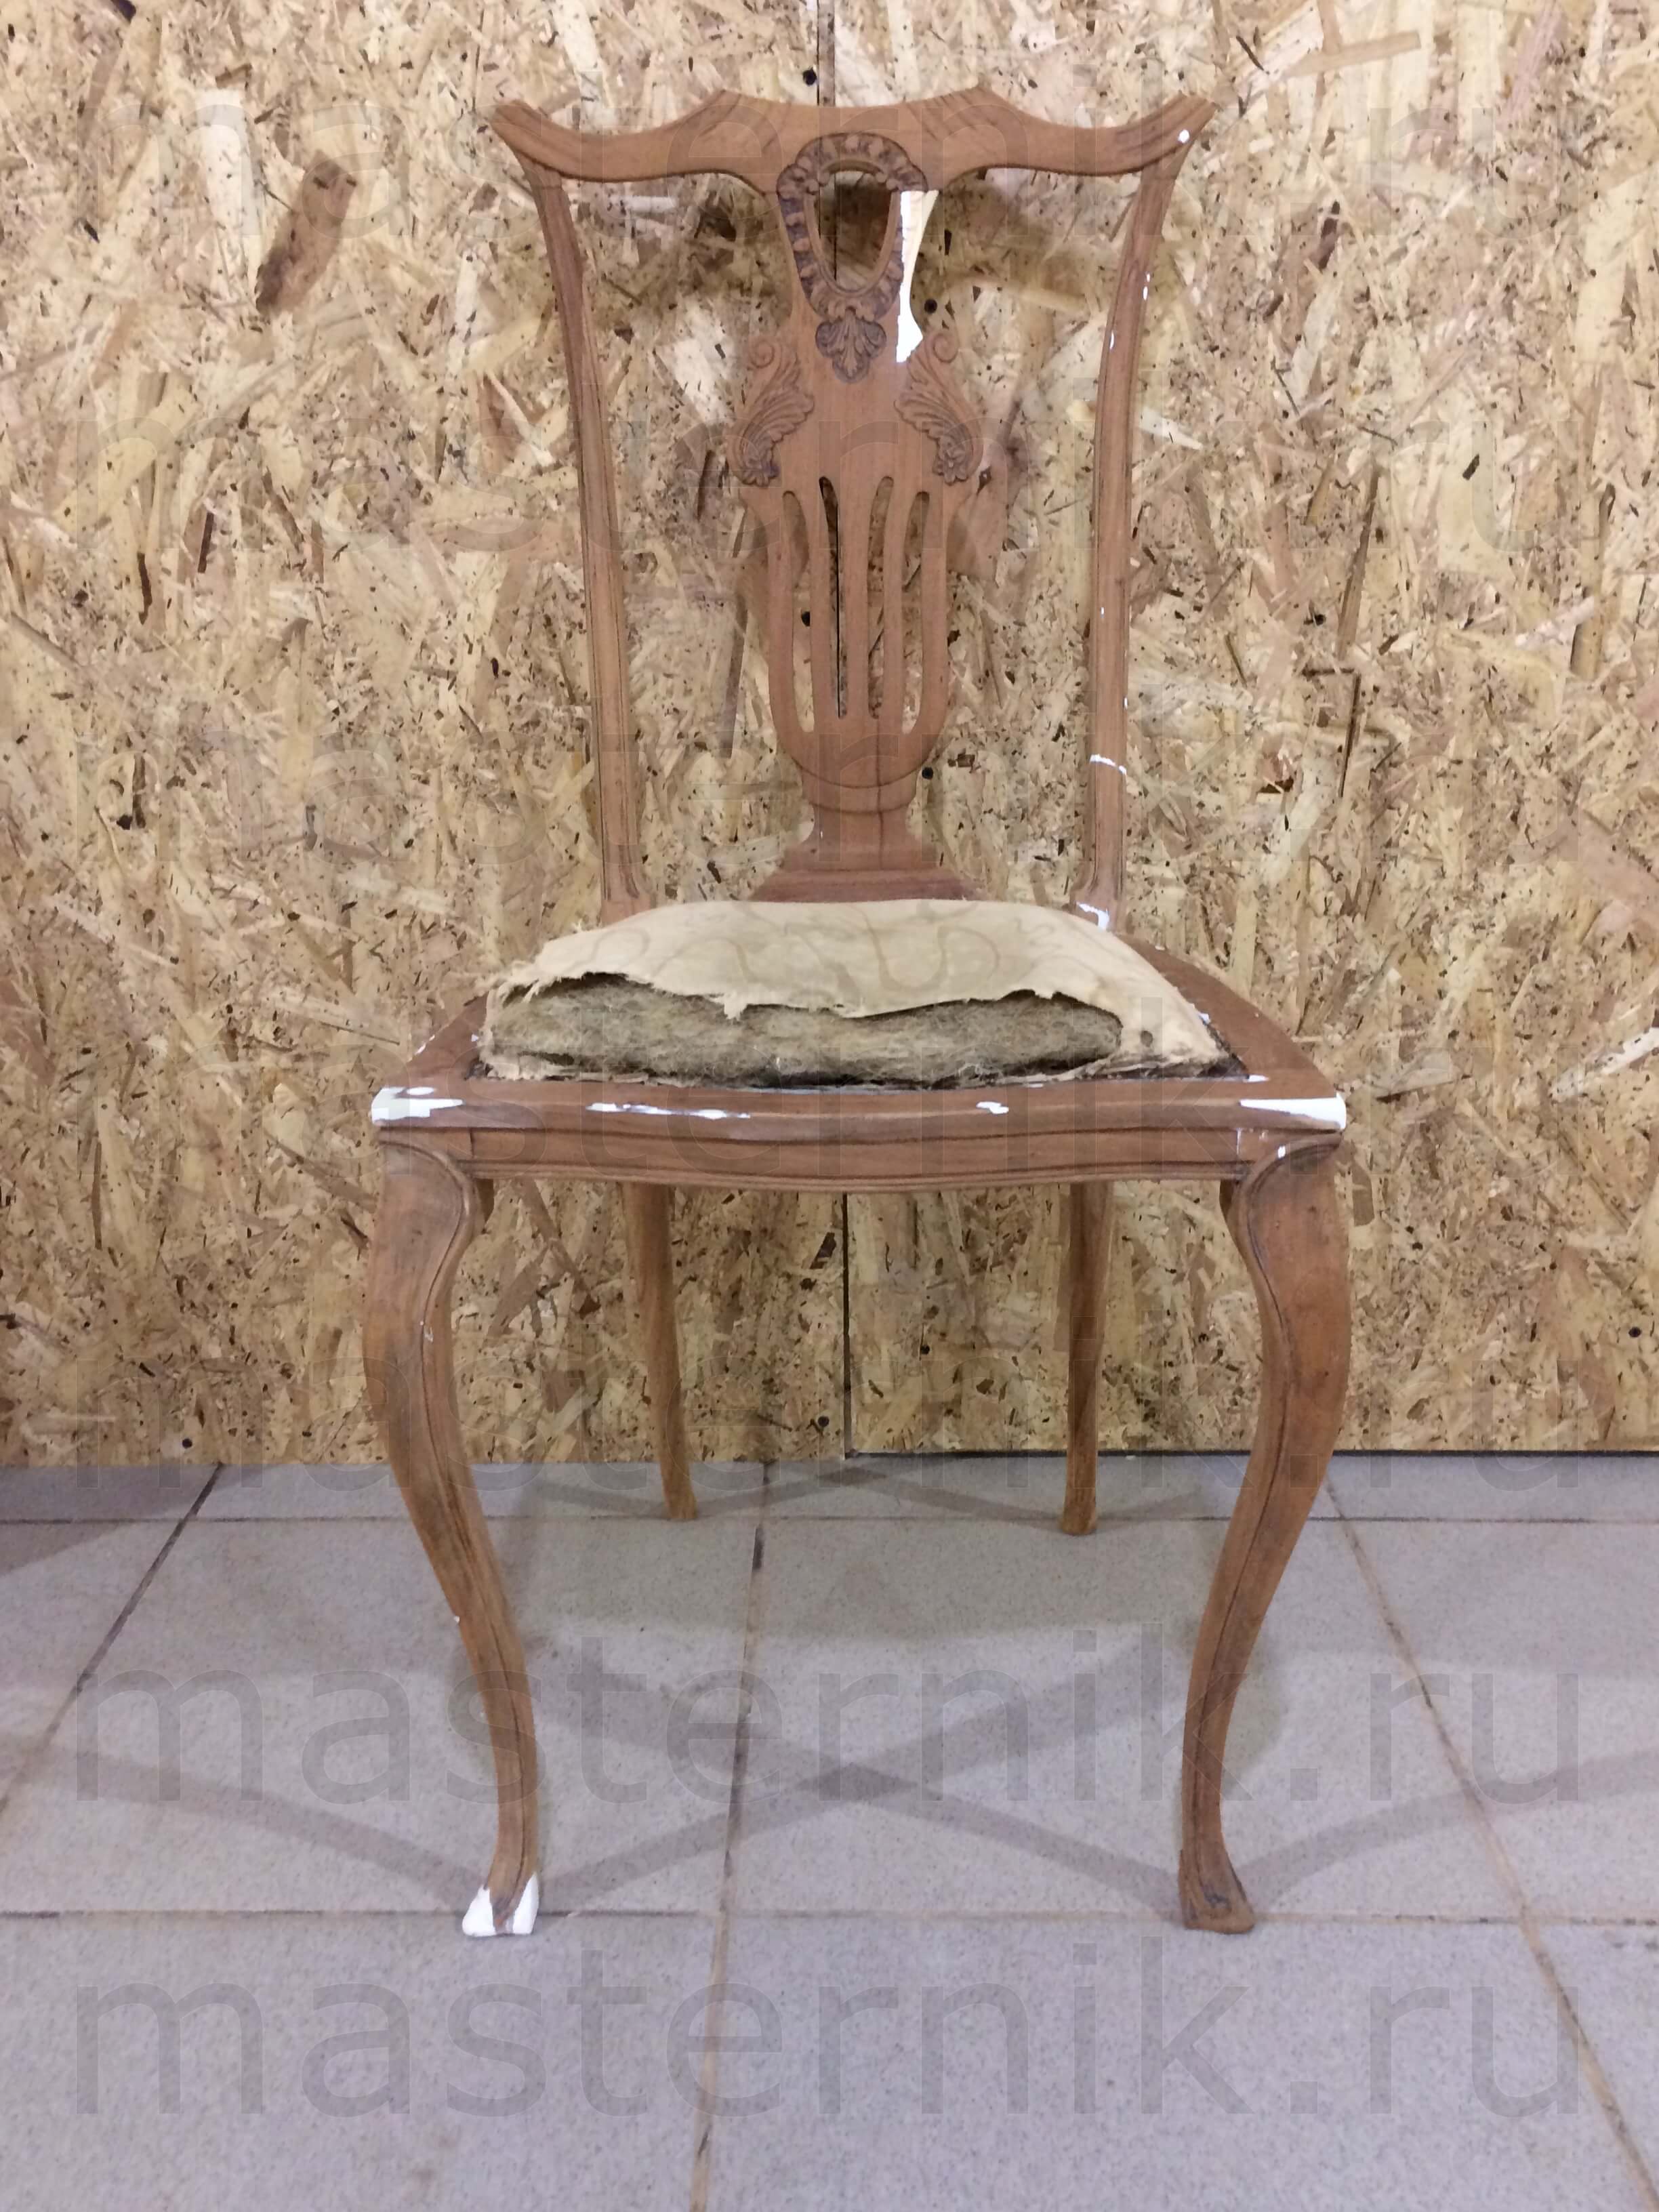 Реставрация антикварного стула